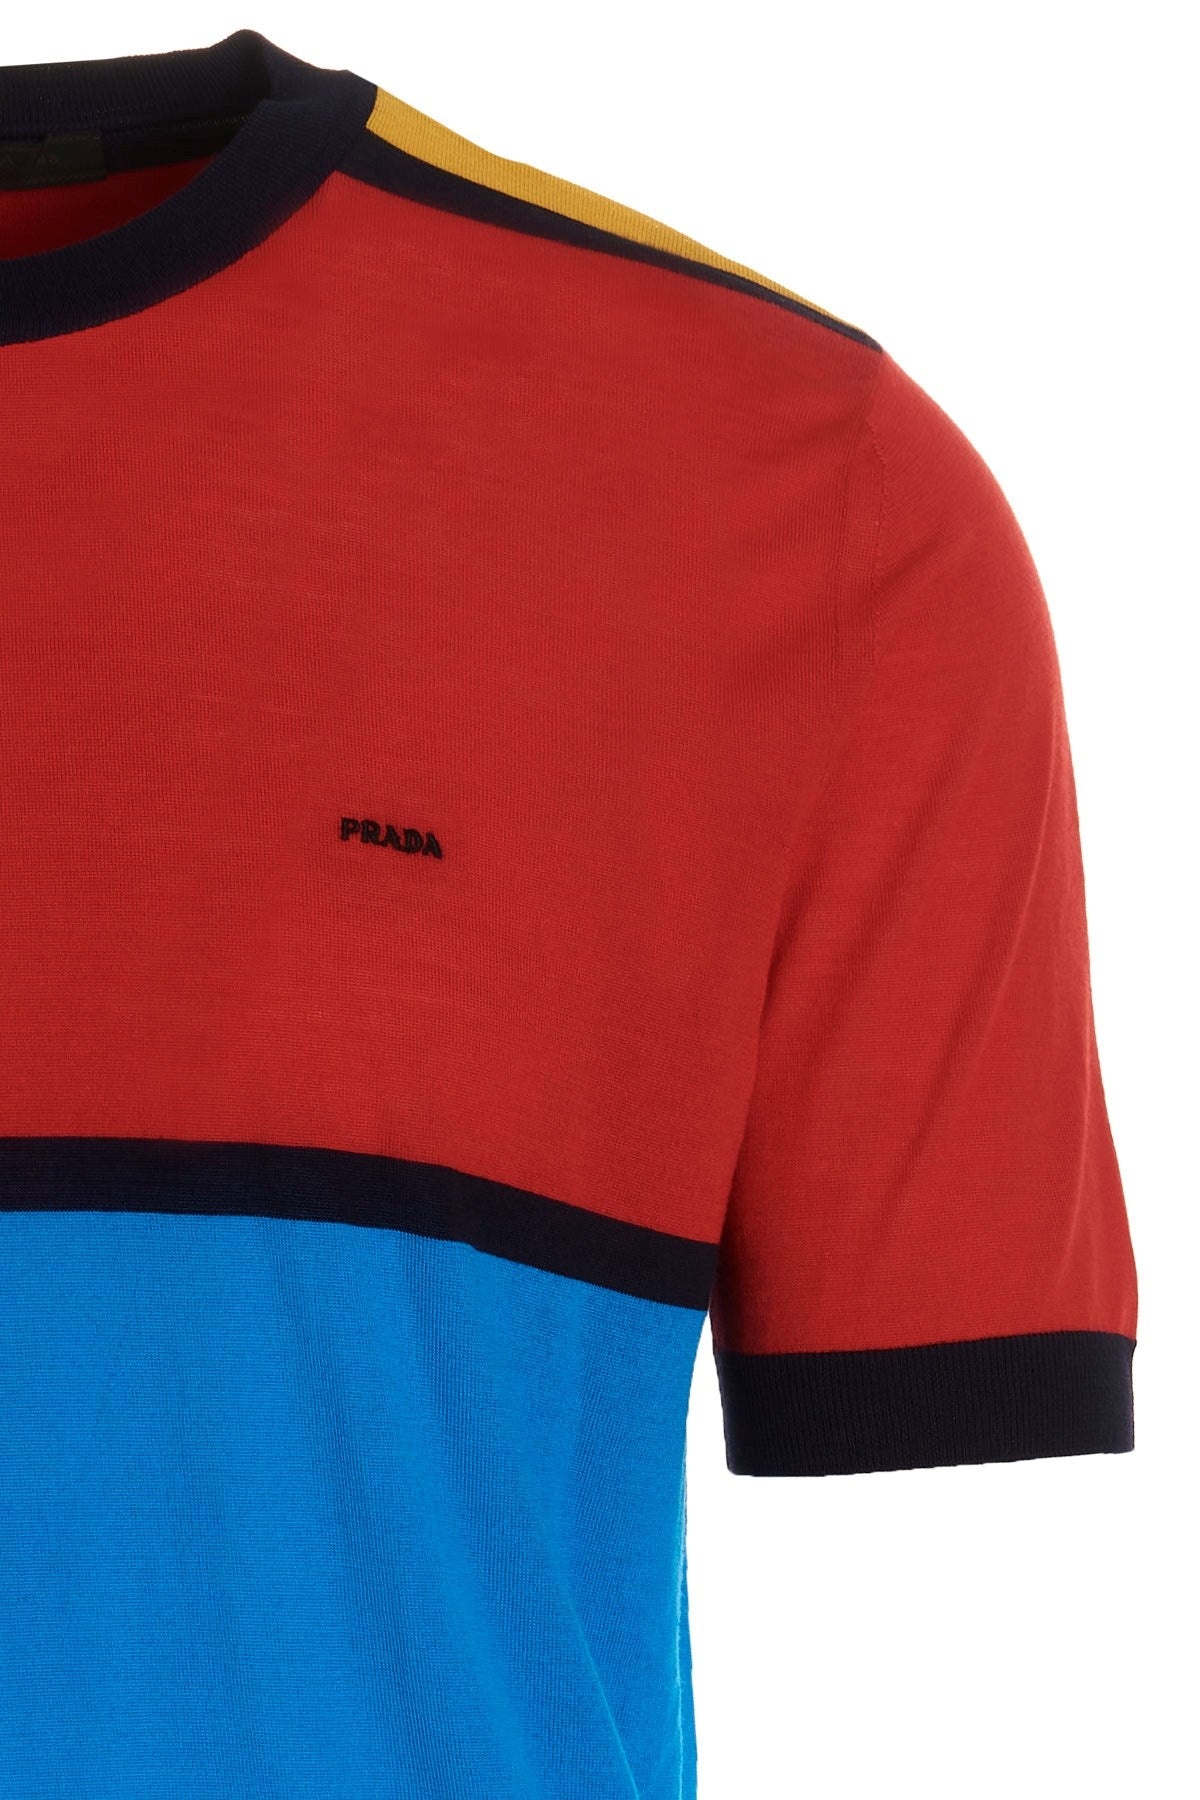 Prada Men Logo Colorblock Sweater - 3